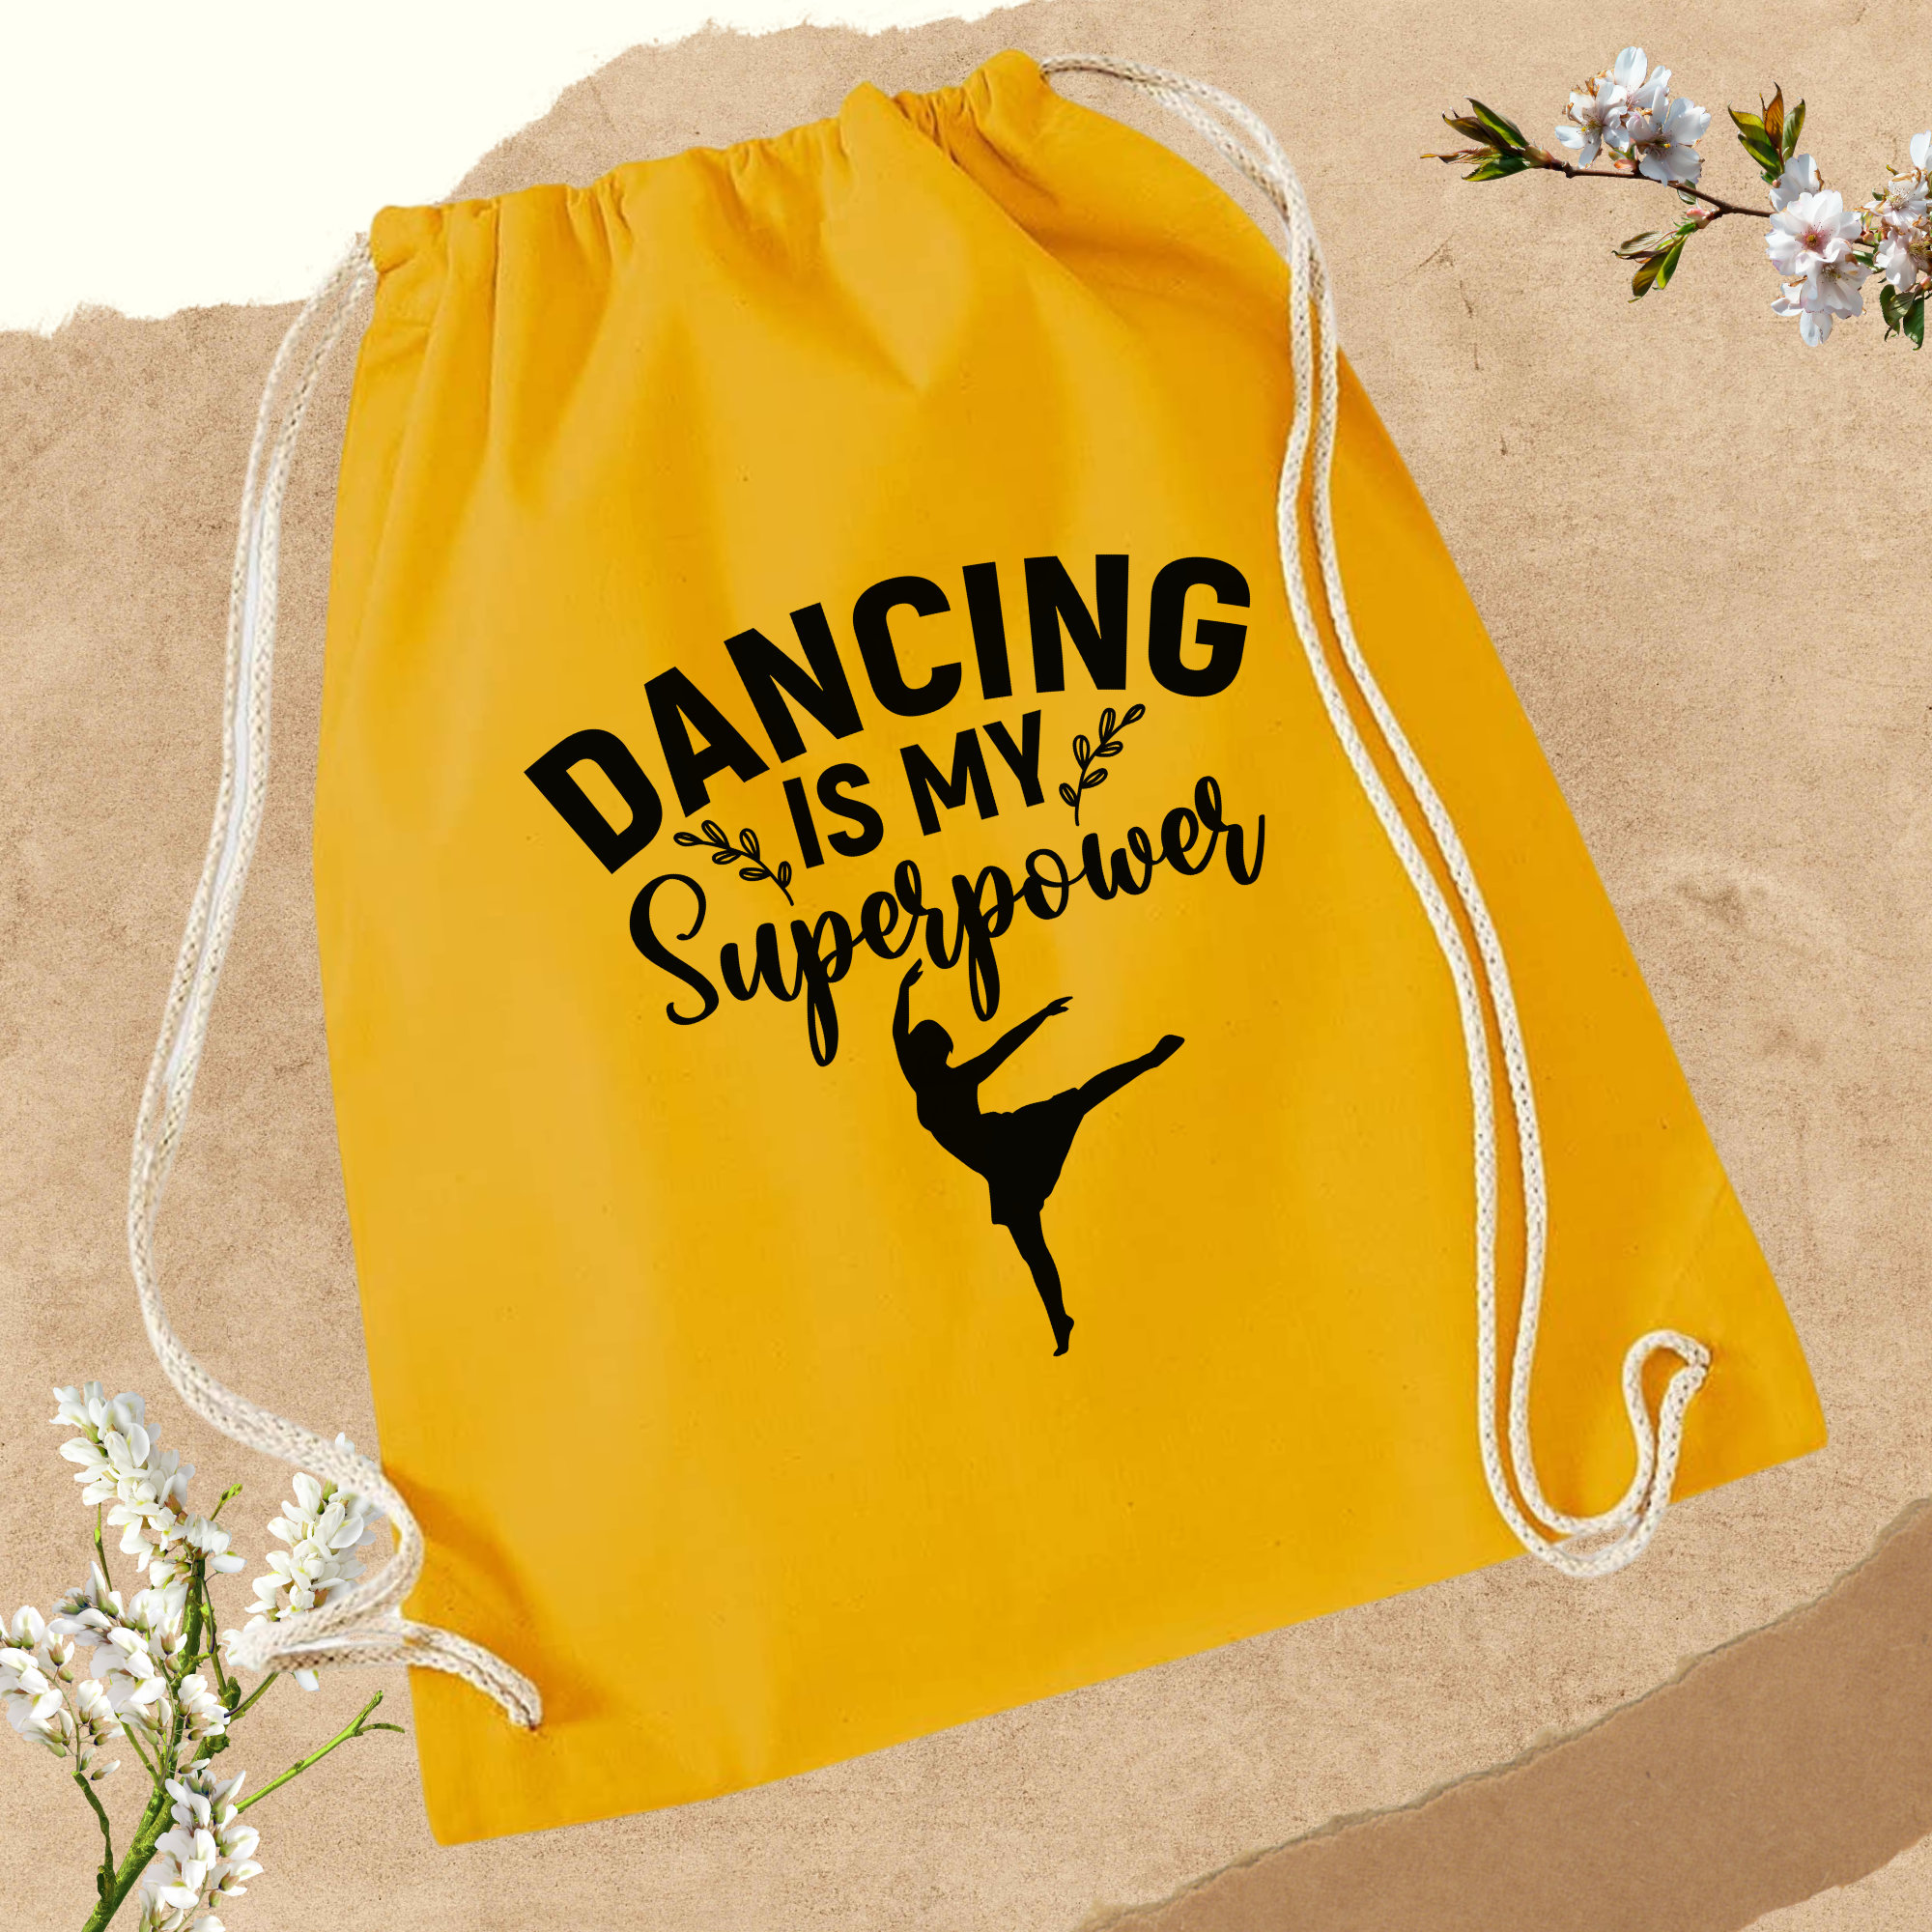 Turnbeutel "Dance" zum Zuziehen | Zuziehbeutel Stoffbeutel Sporttasche Rucksack Tanzschuh Tasche - 4 Farben zur Auswahl